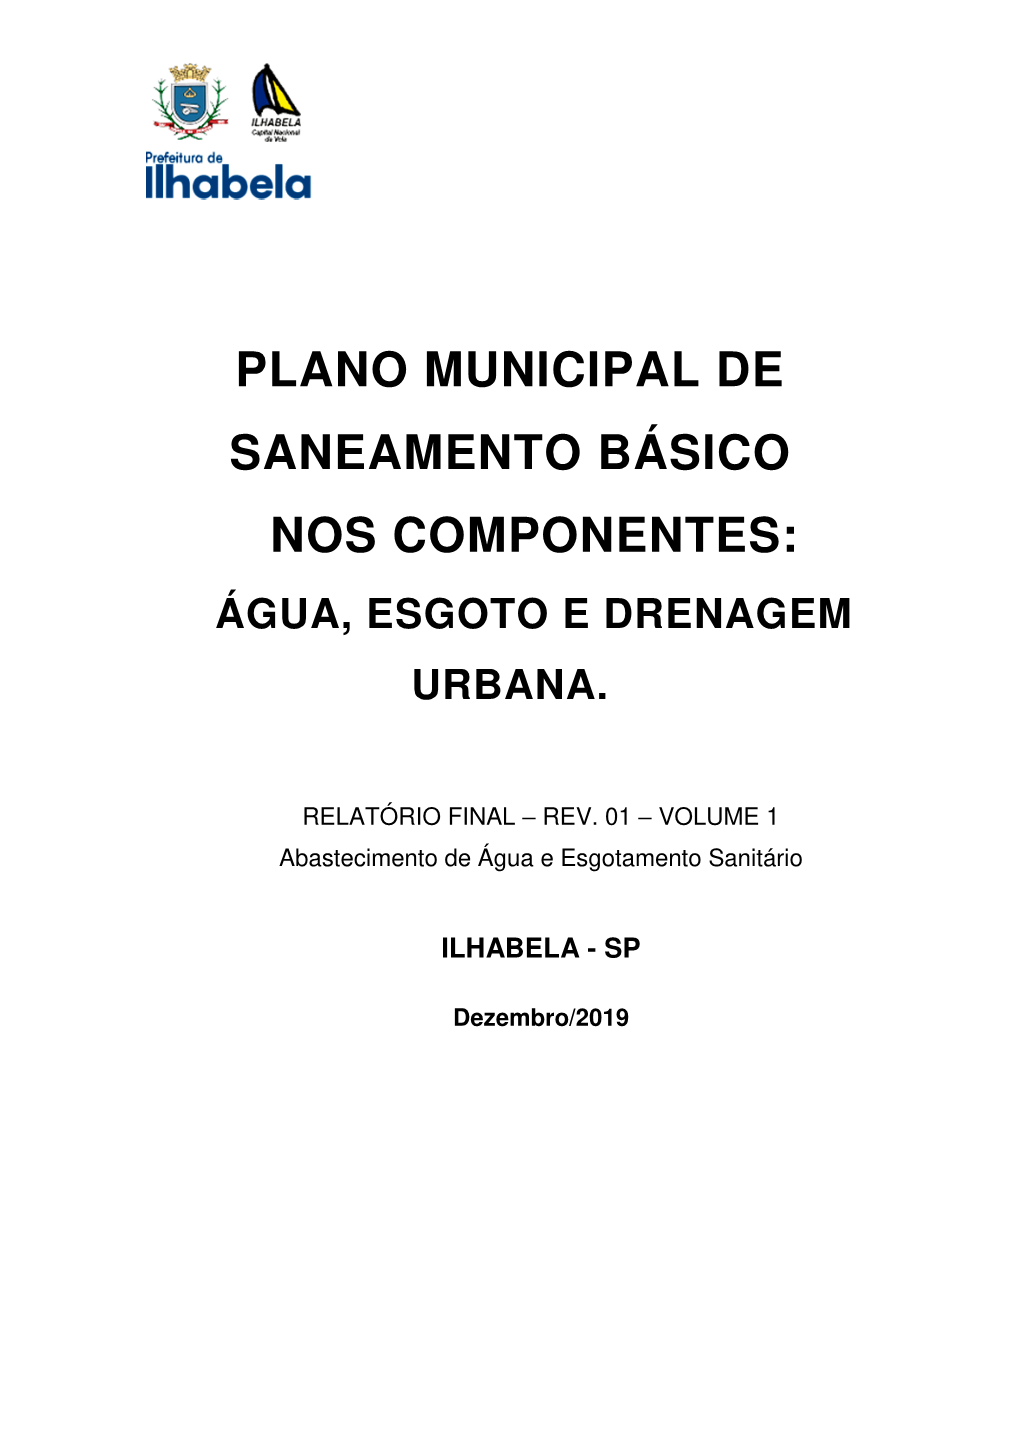 Plano Municipal De Saneamento Básico Nos Componentes: Água, Esgoto E Drenagem Urbana